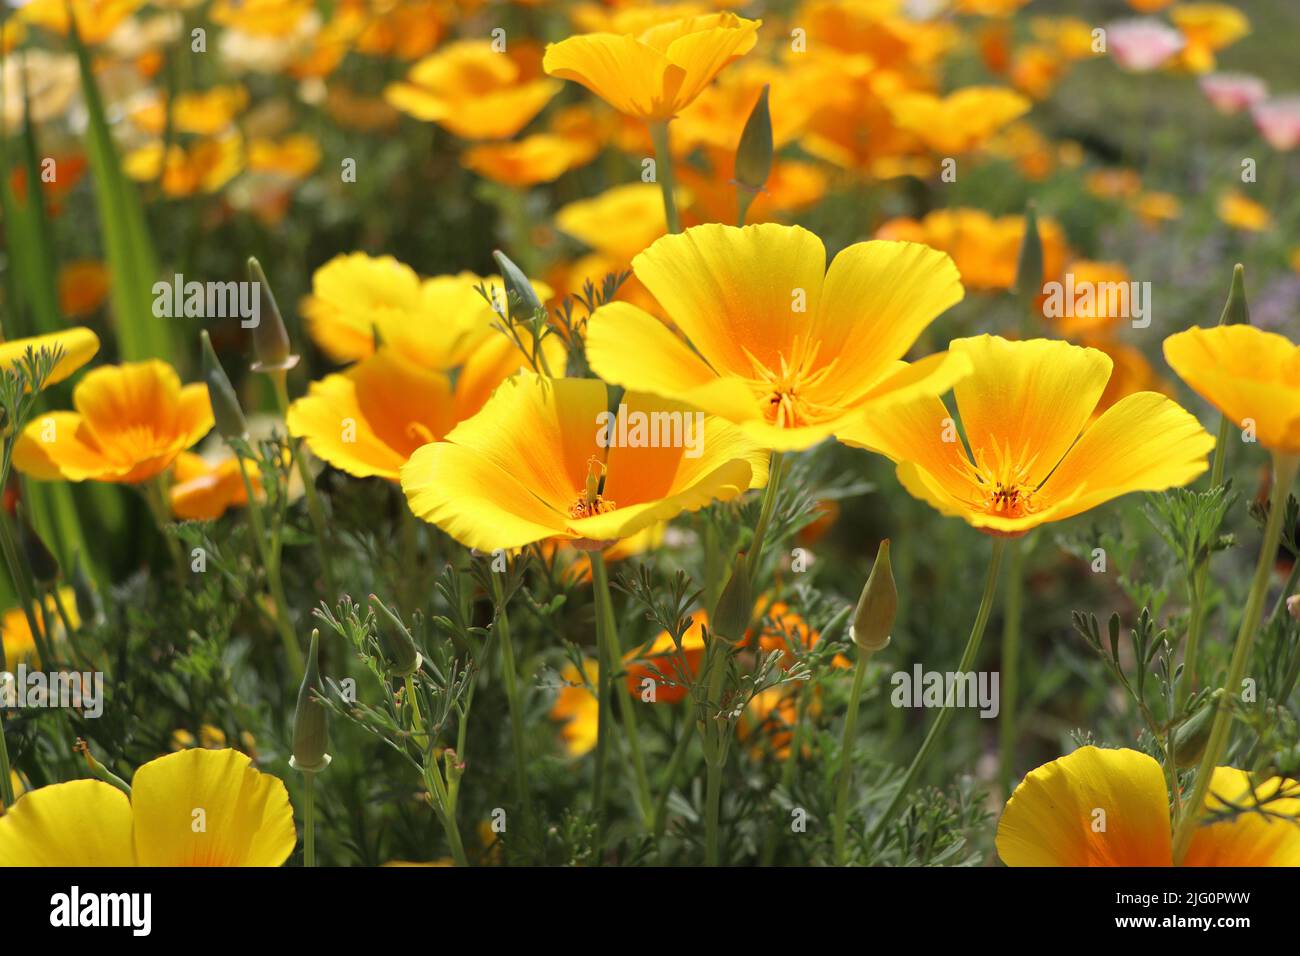 Backgroung d'été.Fleurs d'eschscholzia californica ou coquelicot californien doré, coupe d'or, plante florale de la famille des papaveraceae Banque D'Images